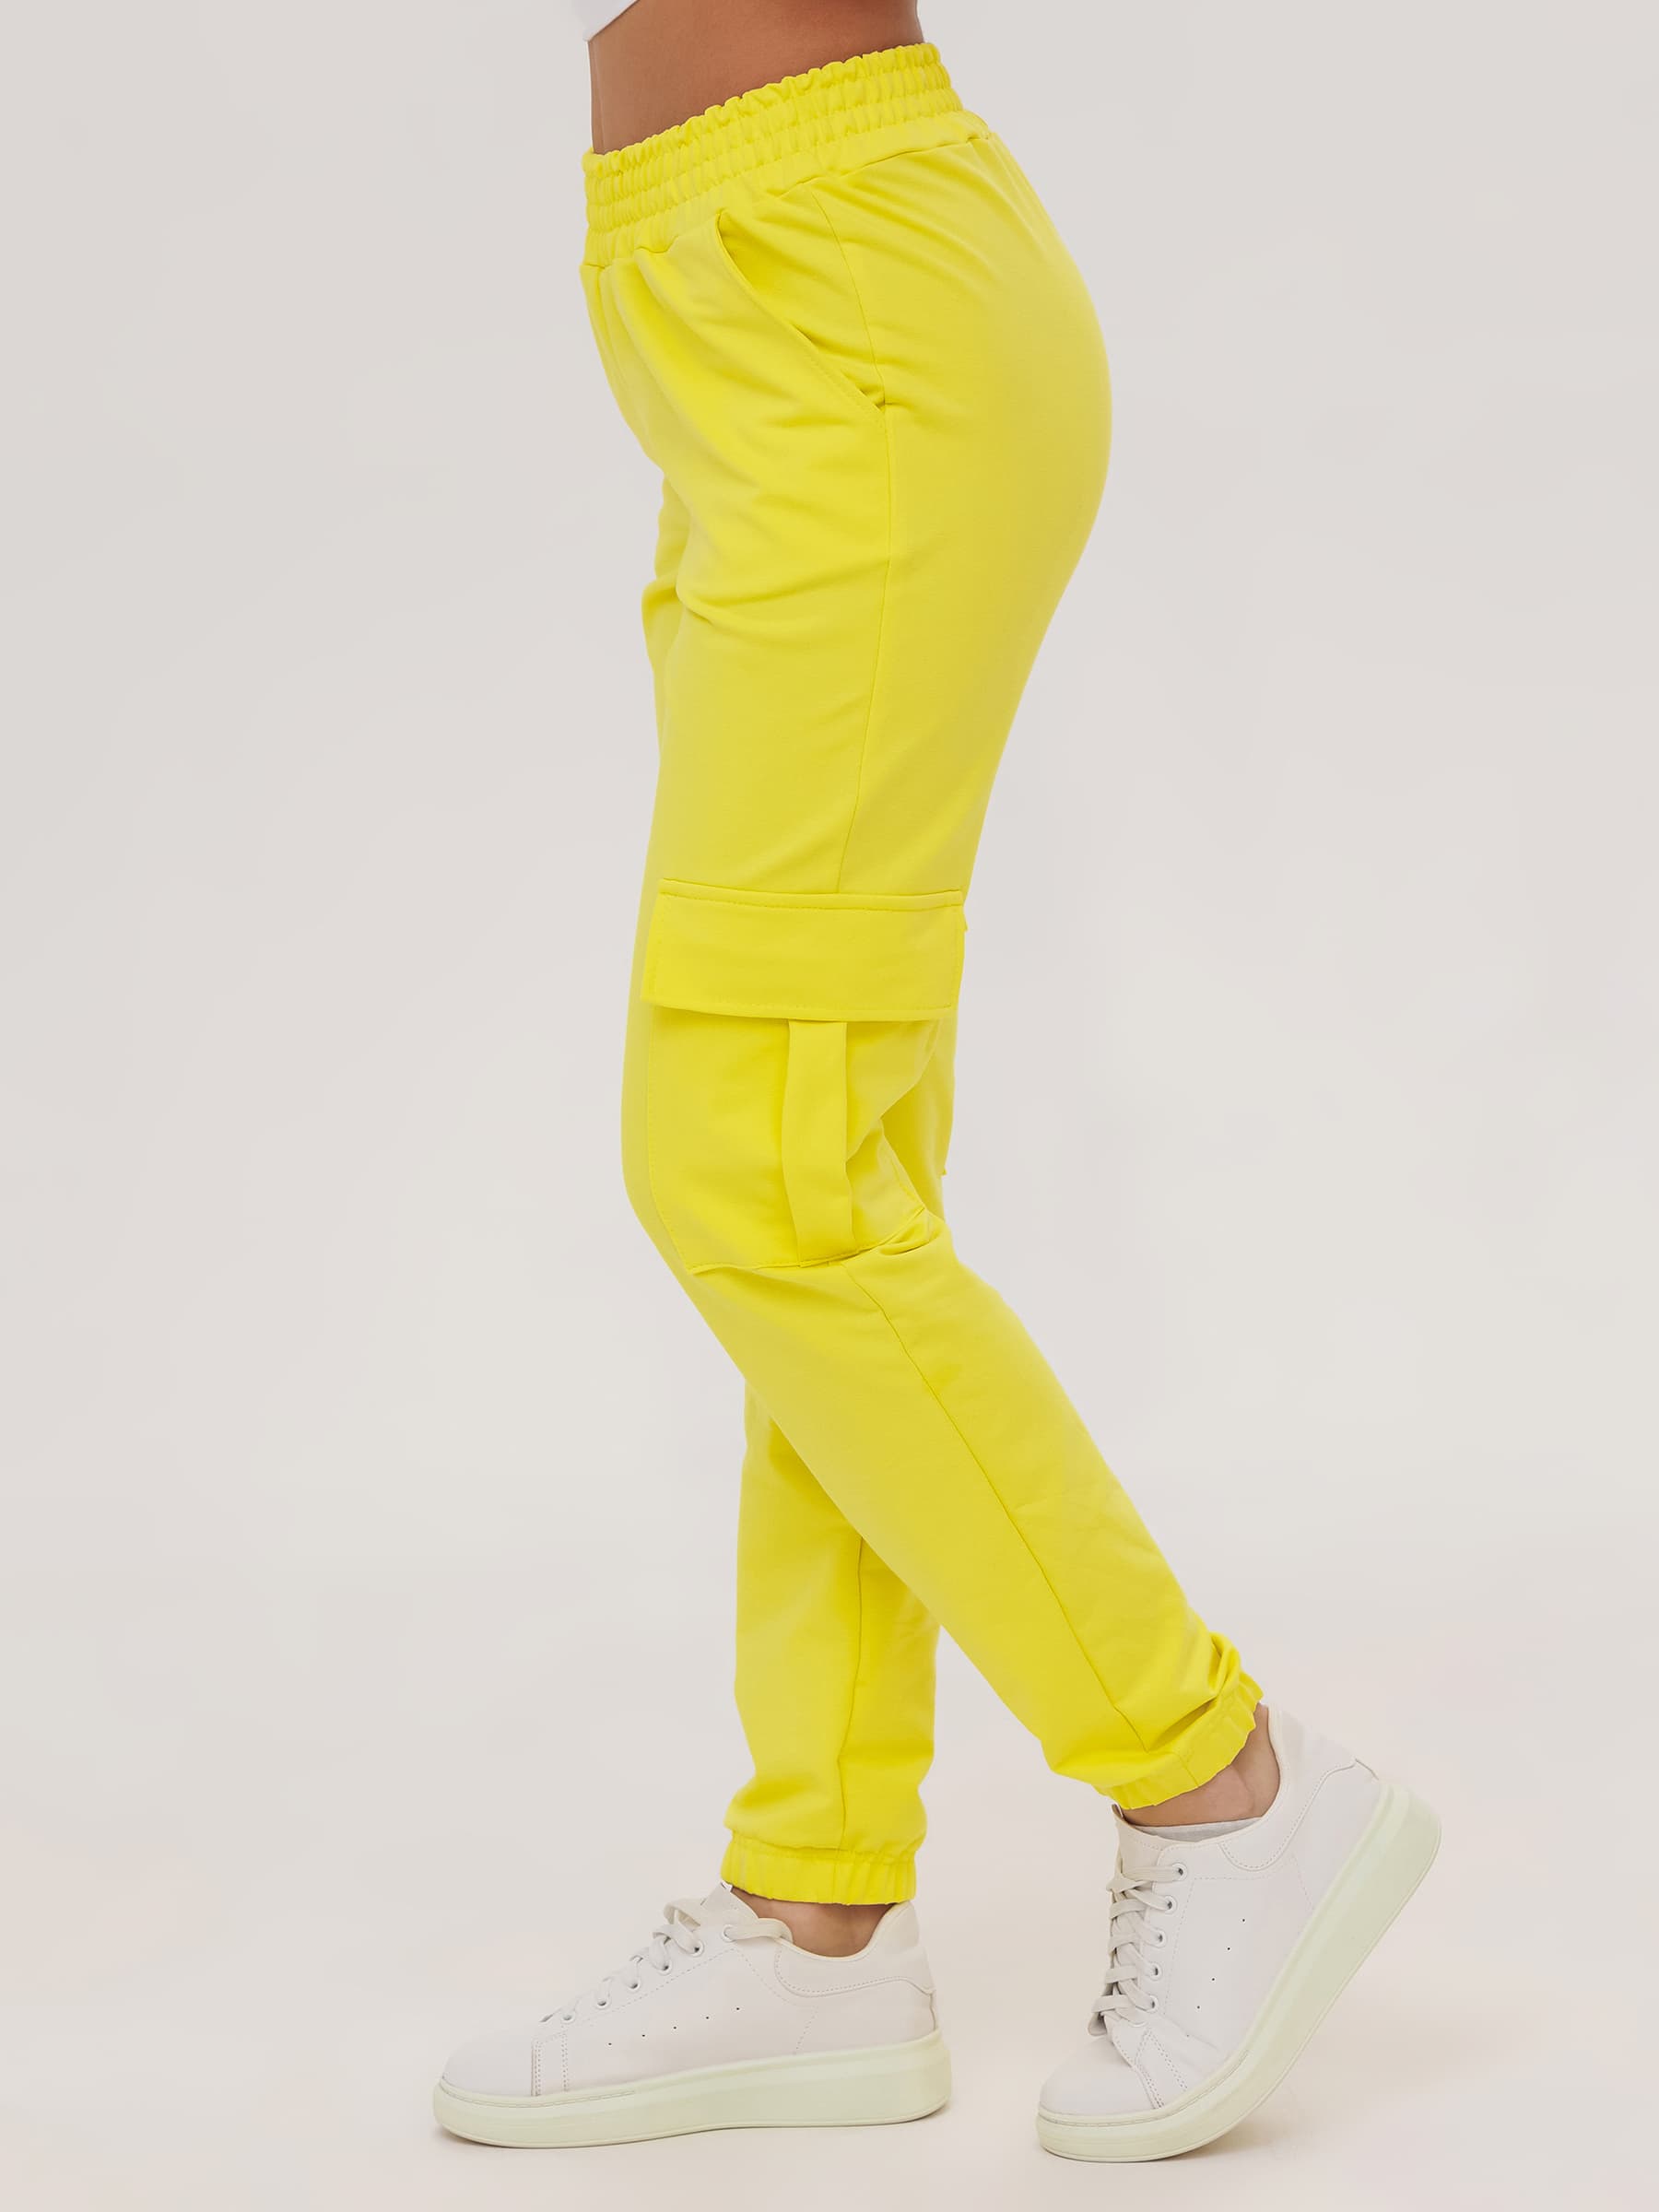 Жен. брюки повседневные арт. 23-0524 Желтый р. 44 Моделлини, размер 44 - фото 5